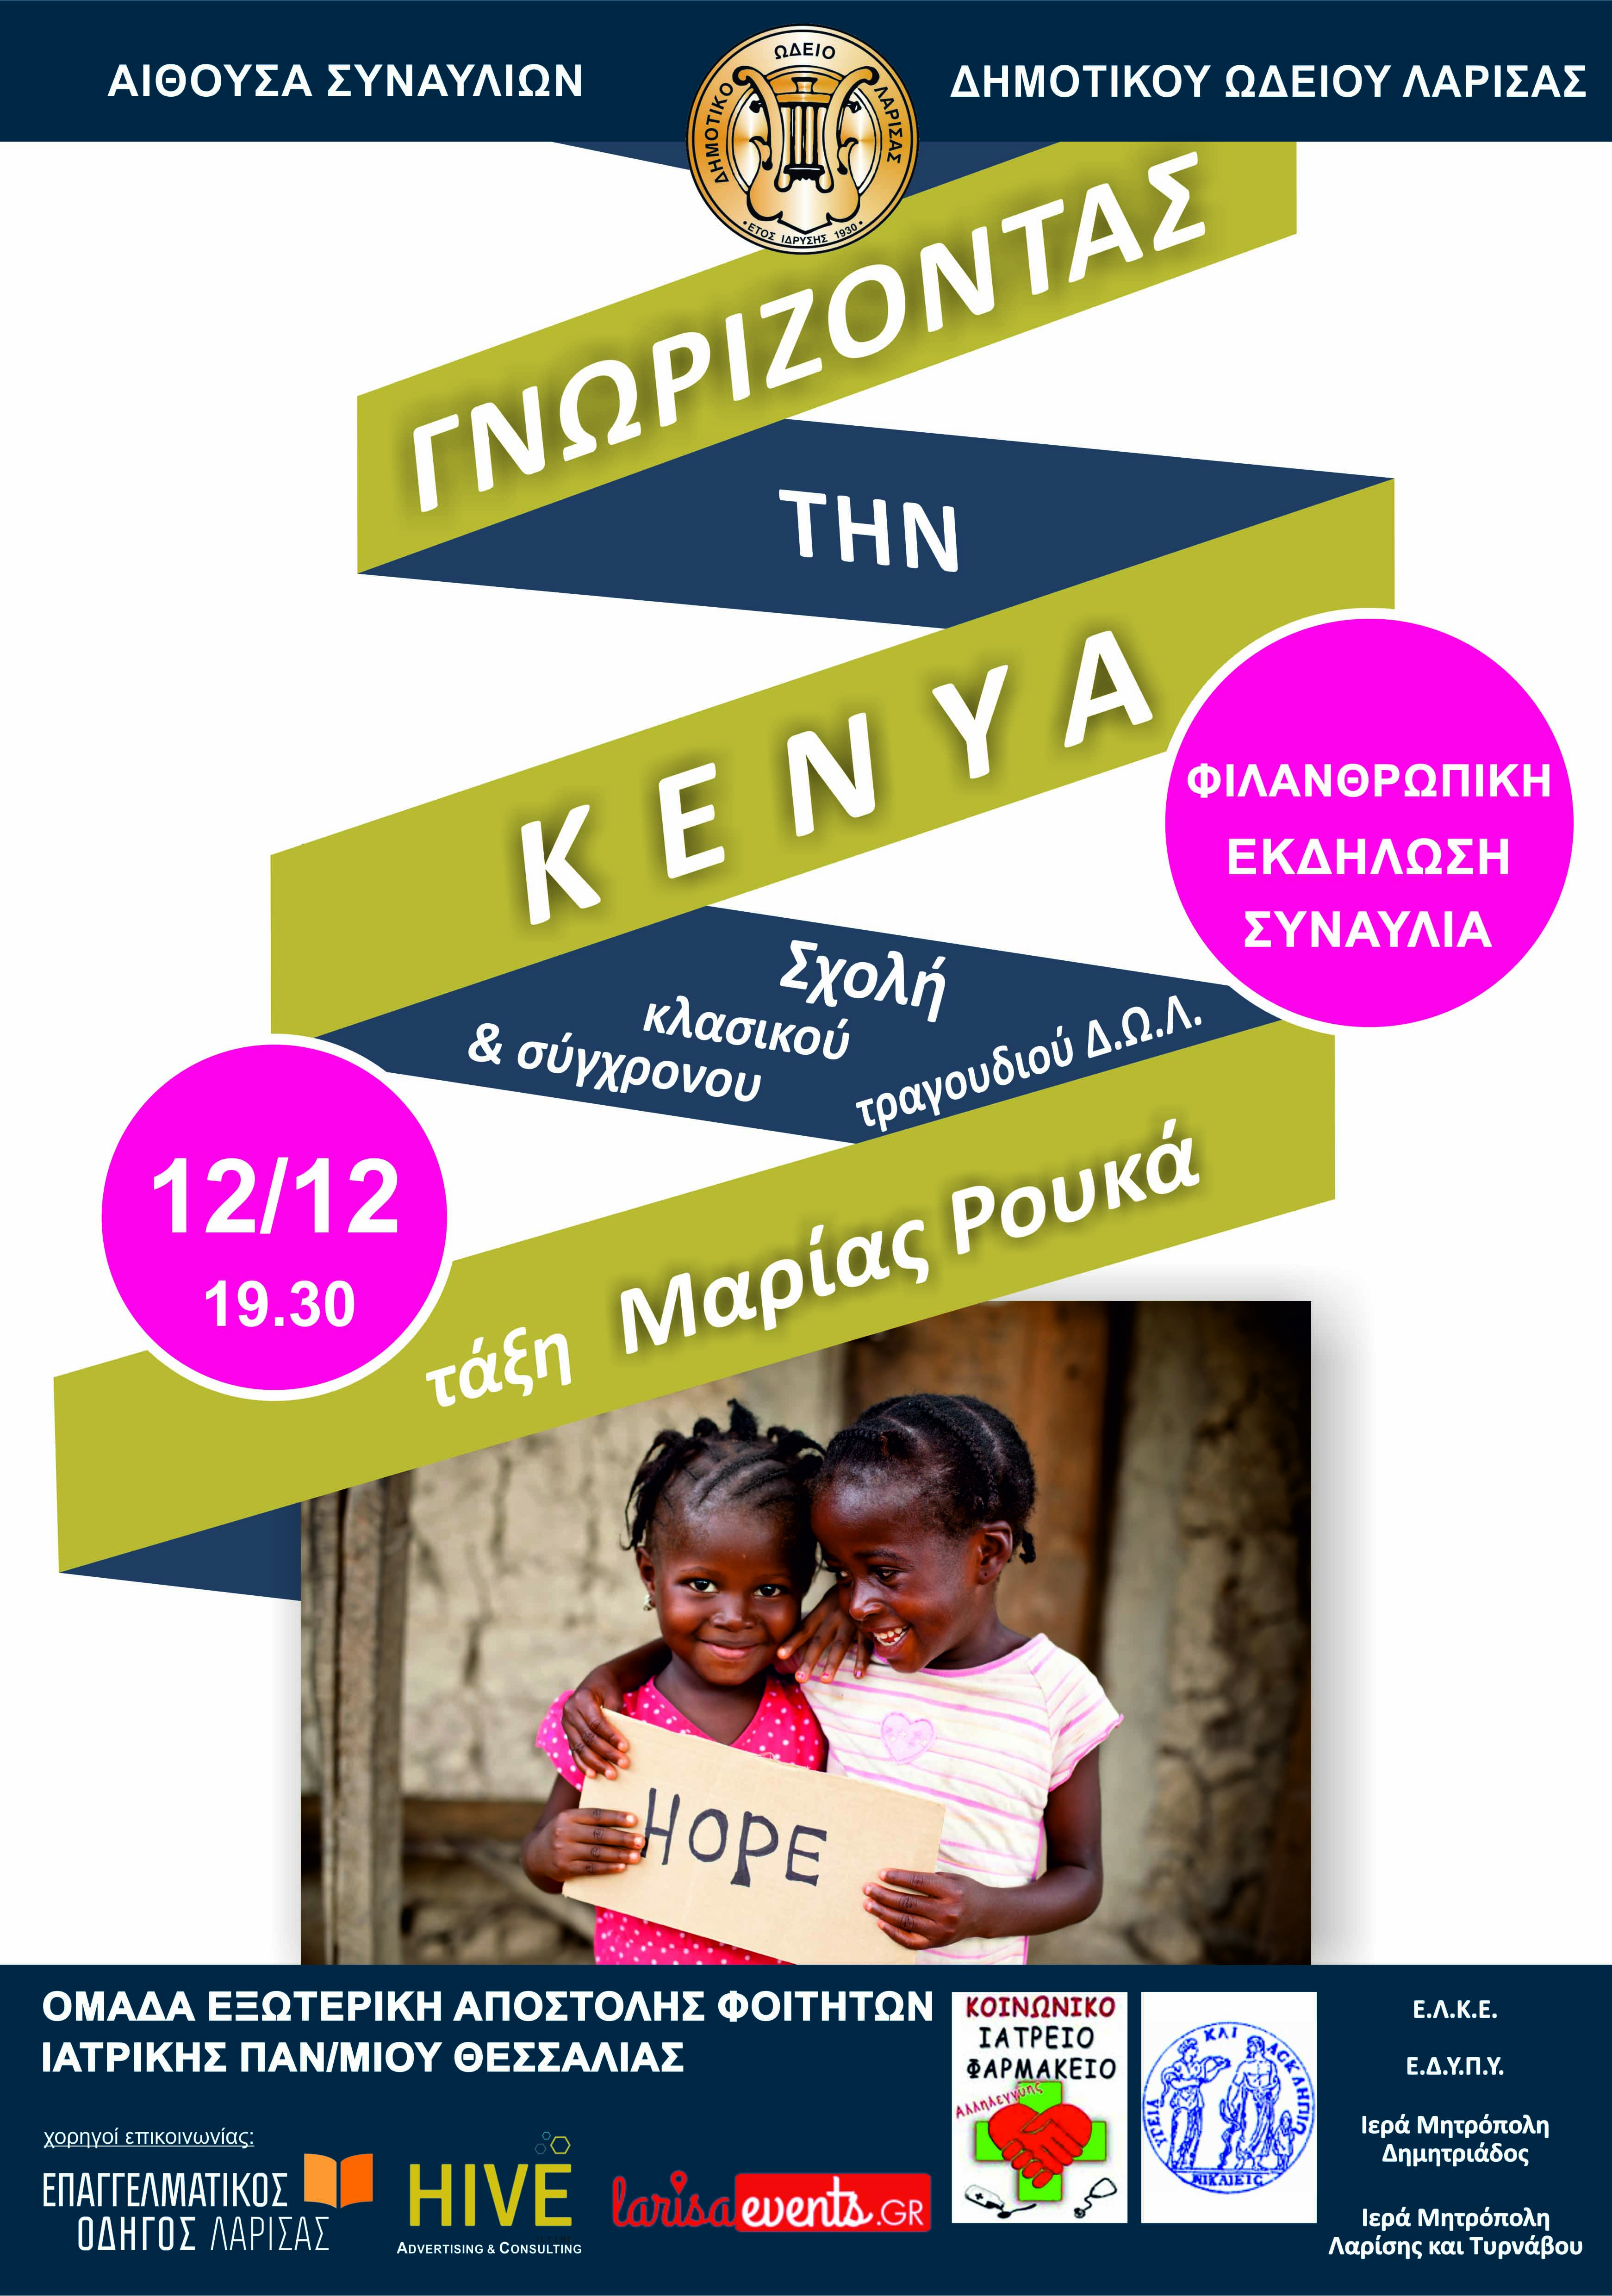 “Γνωρίζοντας την Κένυα” στο ΔΩΛ - Φιλανθρωπική εκδήλωση